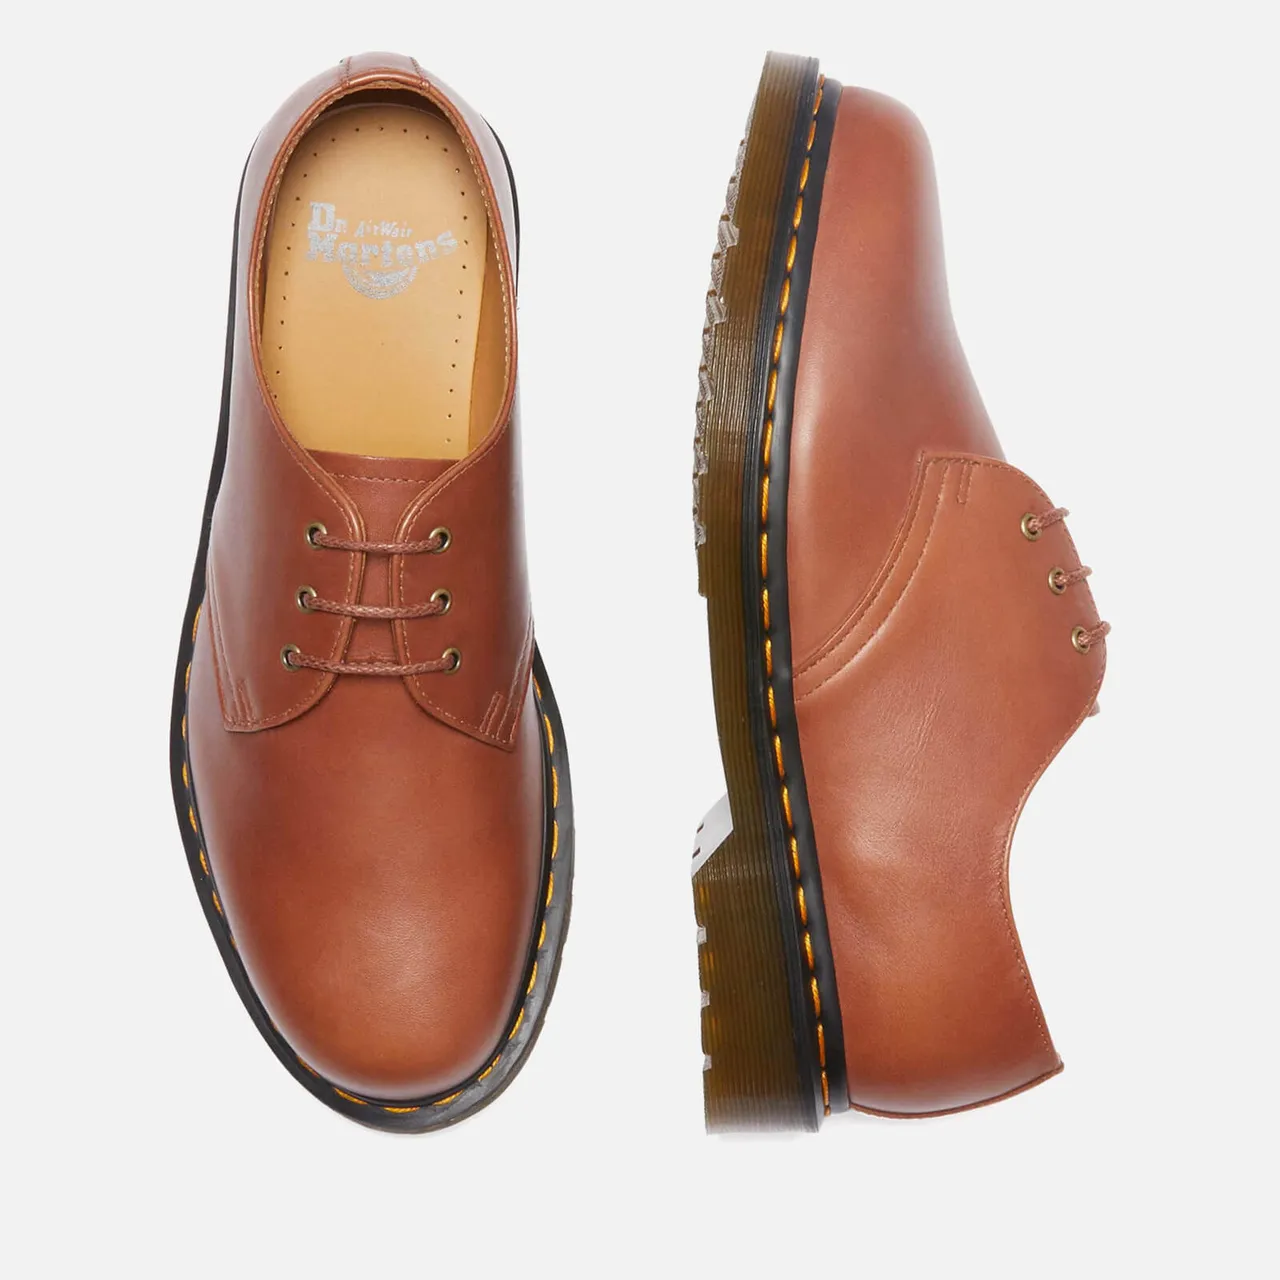 Dr. Martens Men's 1461 Leather Shoes